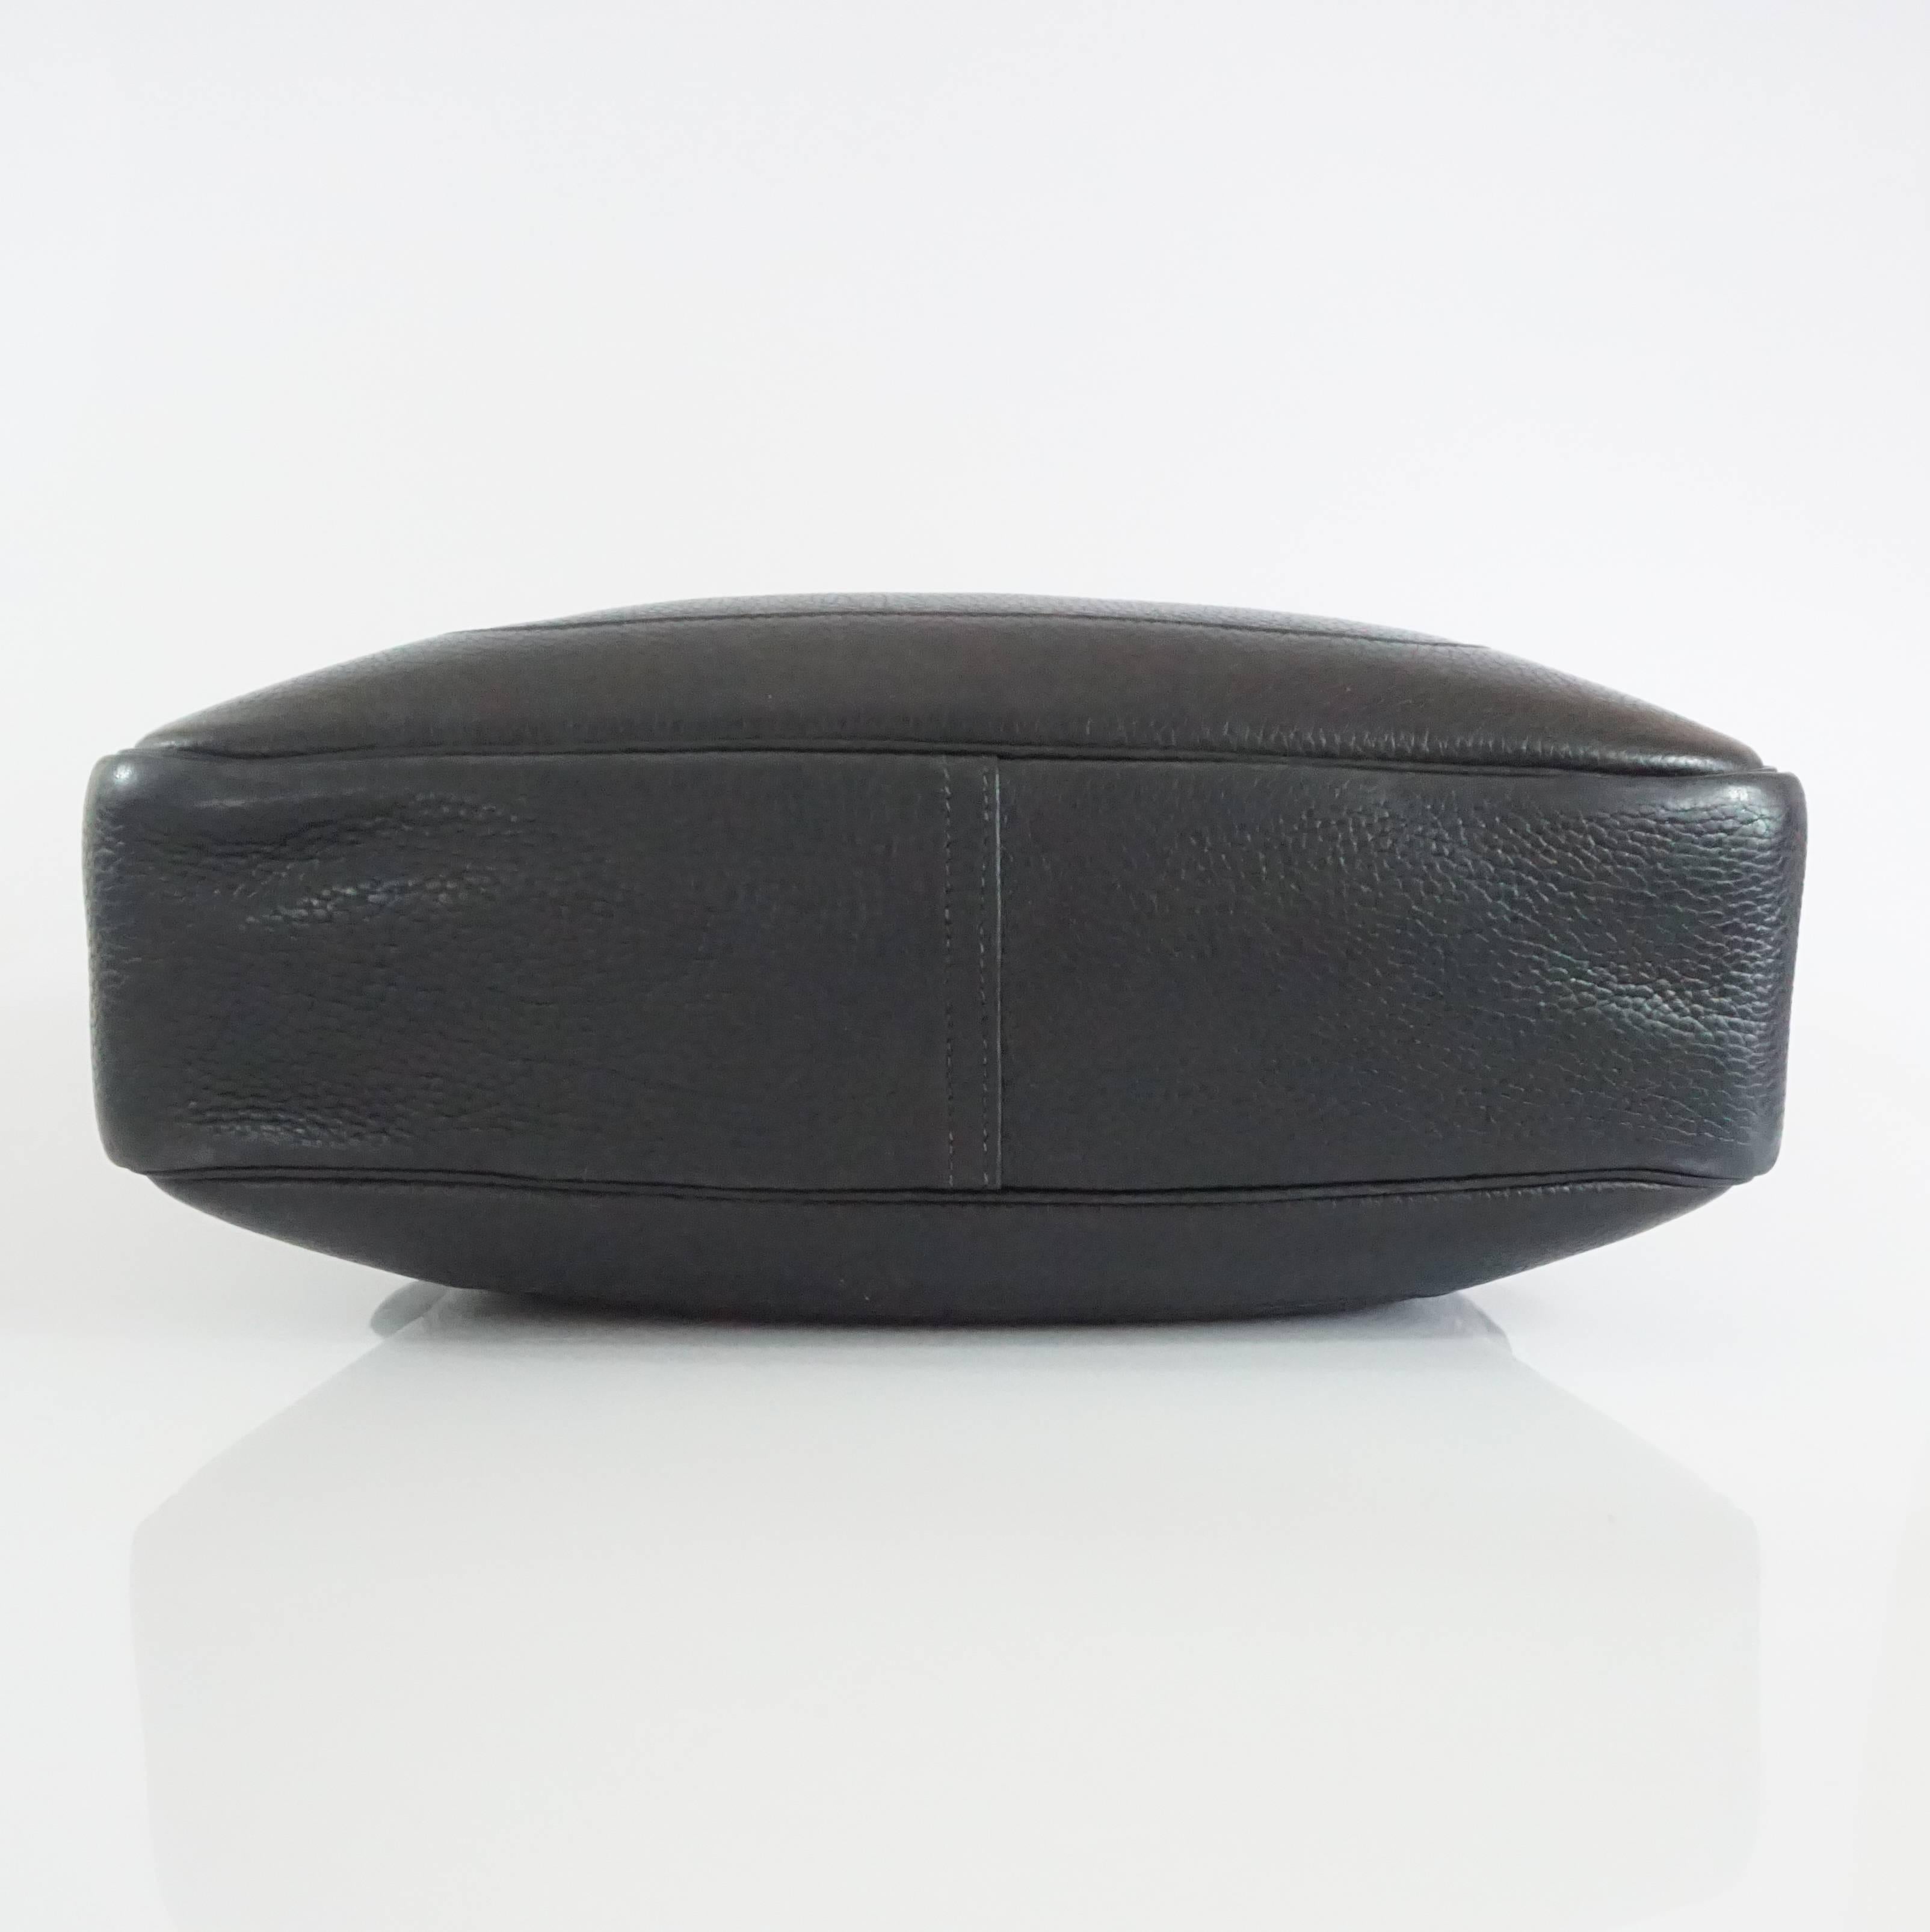 Hermes Black 35cm Togo Leather Trim Handbag - GHW - circa 2004 1